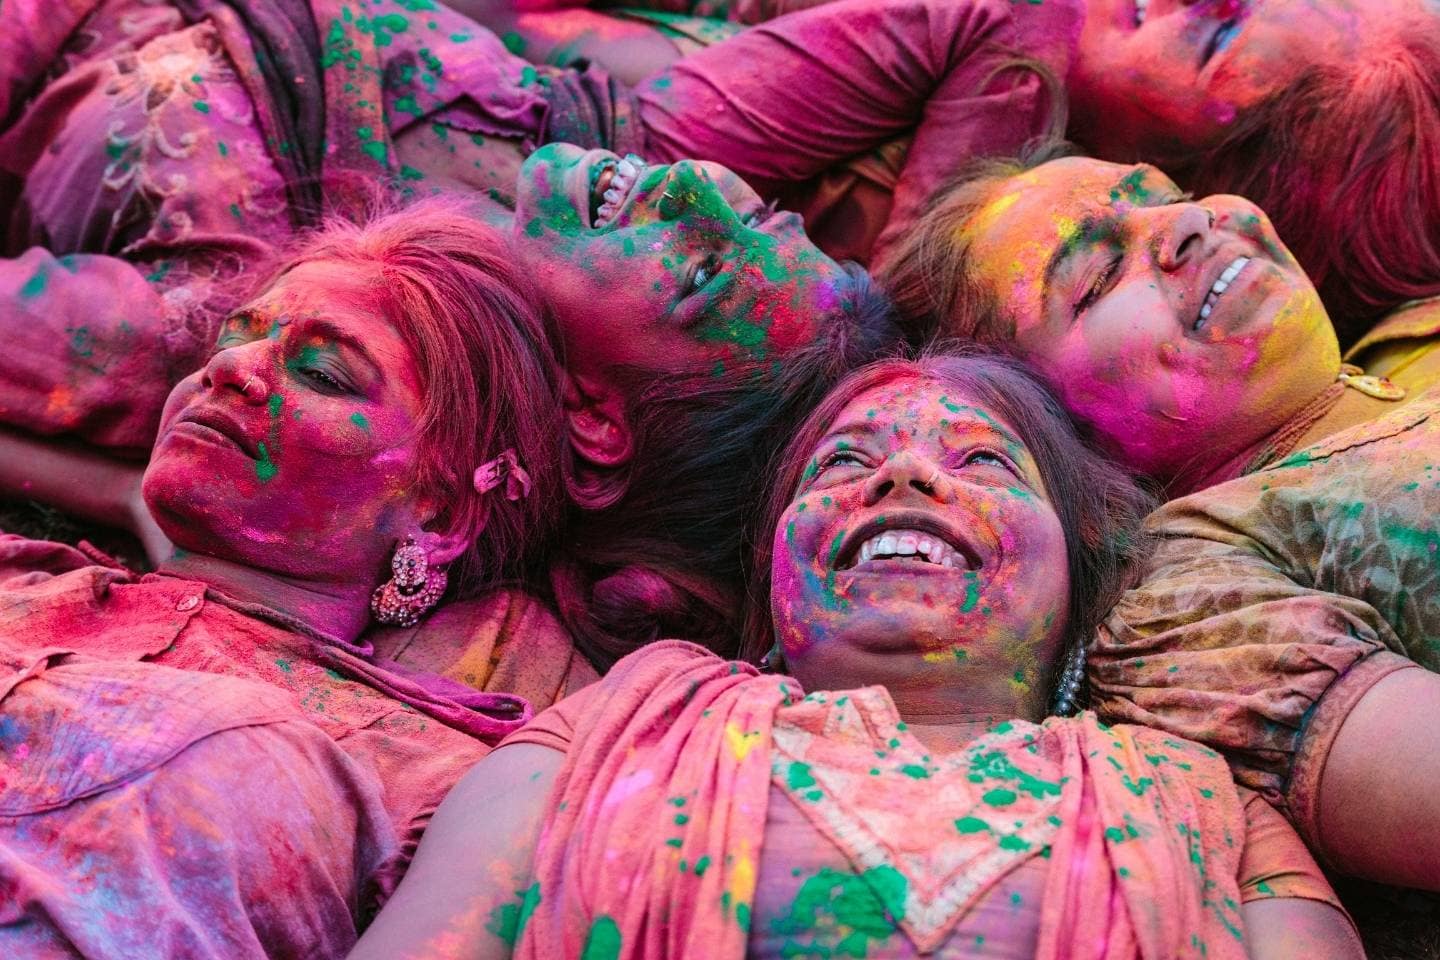 Holi festival of color